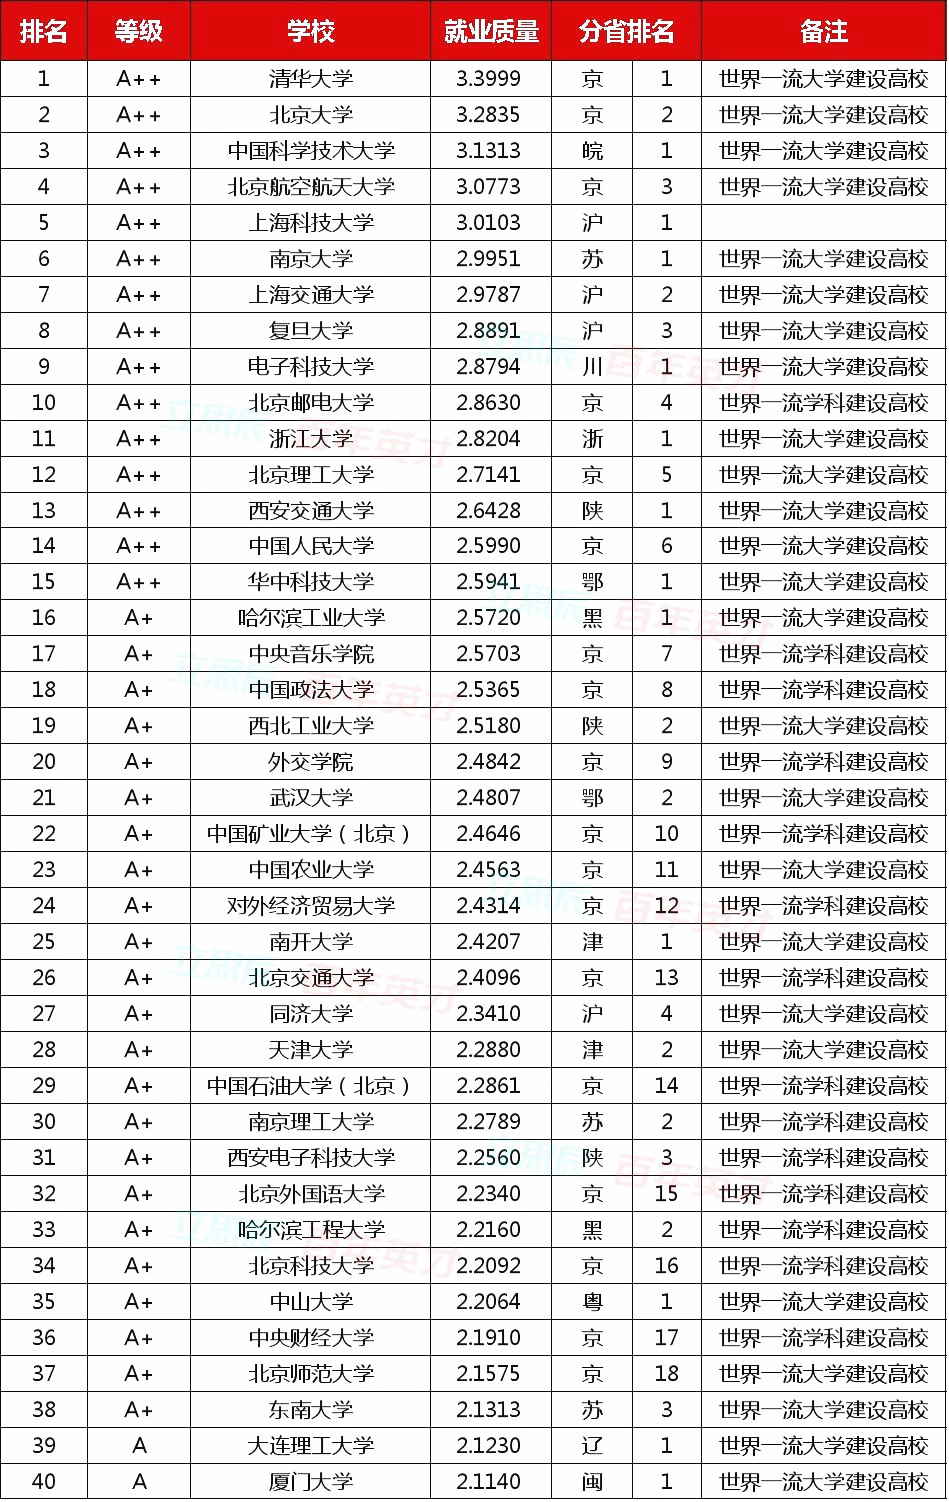 2019年中国大学本科生就业排行榜出炉！19届考生志愿填报收藏！